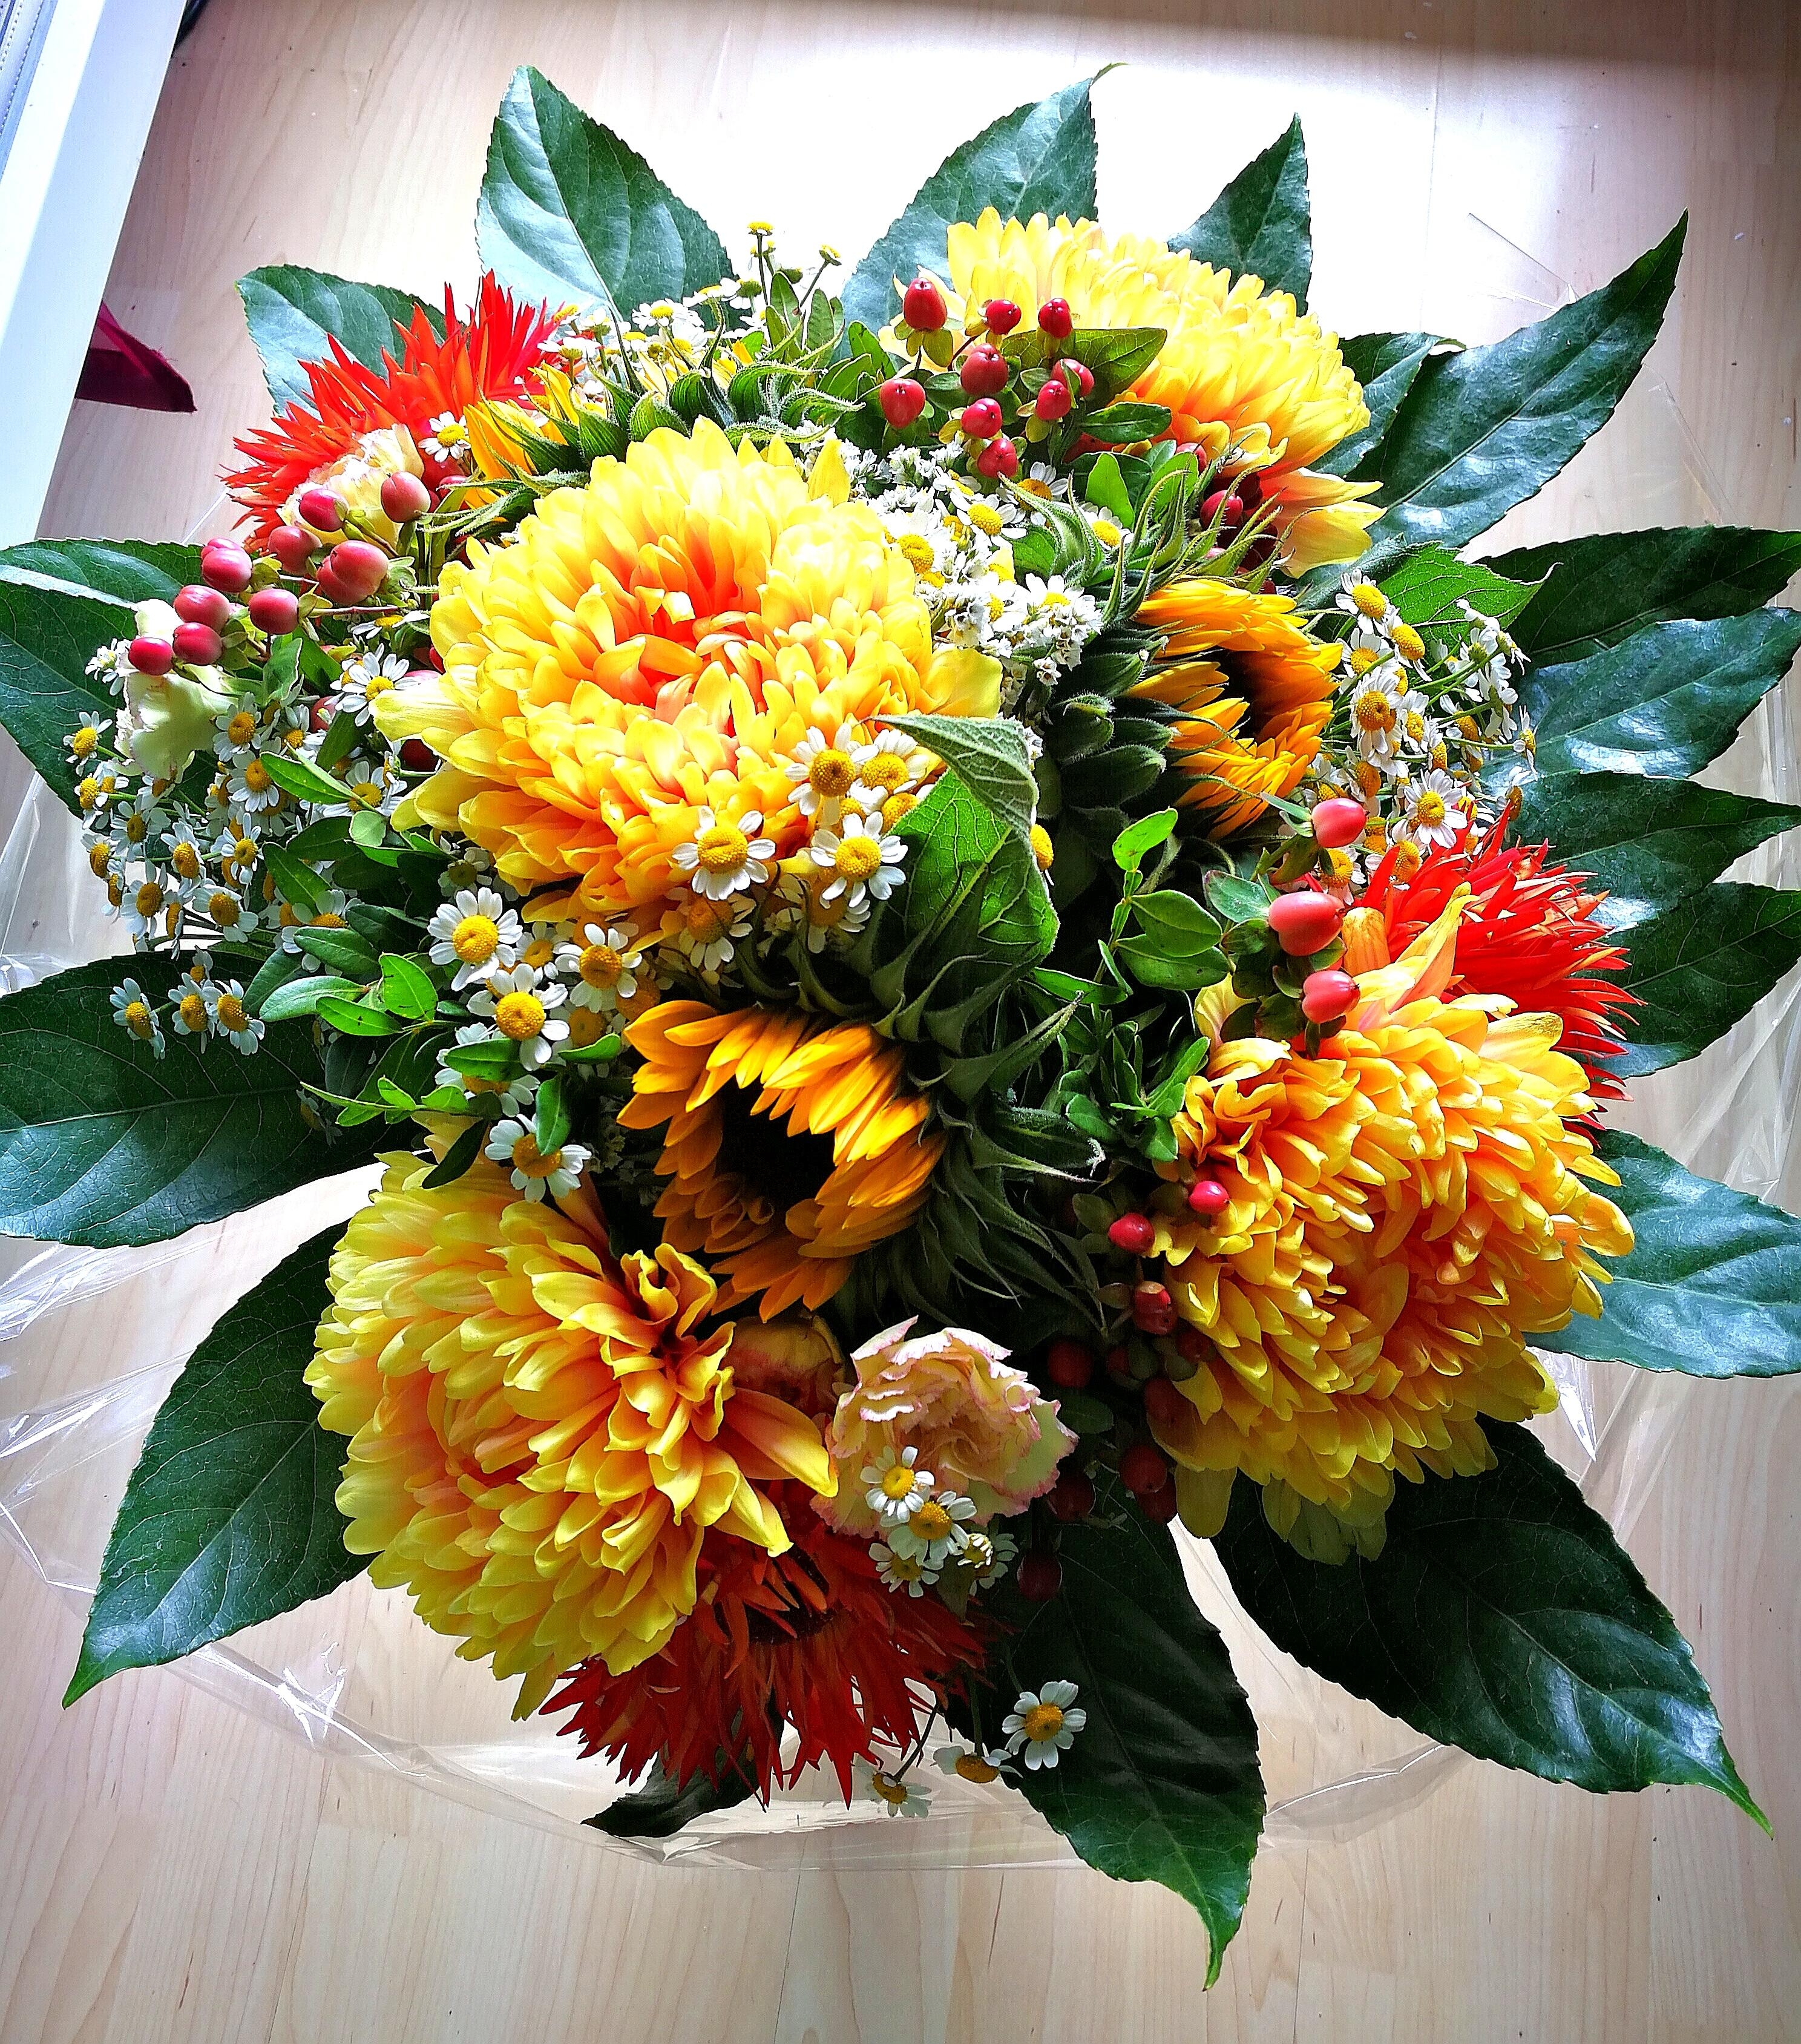 #HappyBirthday
#BirthdayFlowers
#Flowers
#Blumenliebe
#wunderschönefarben